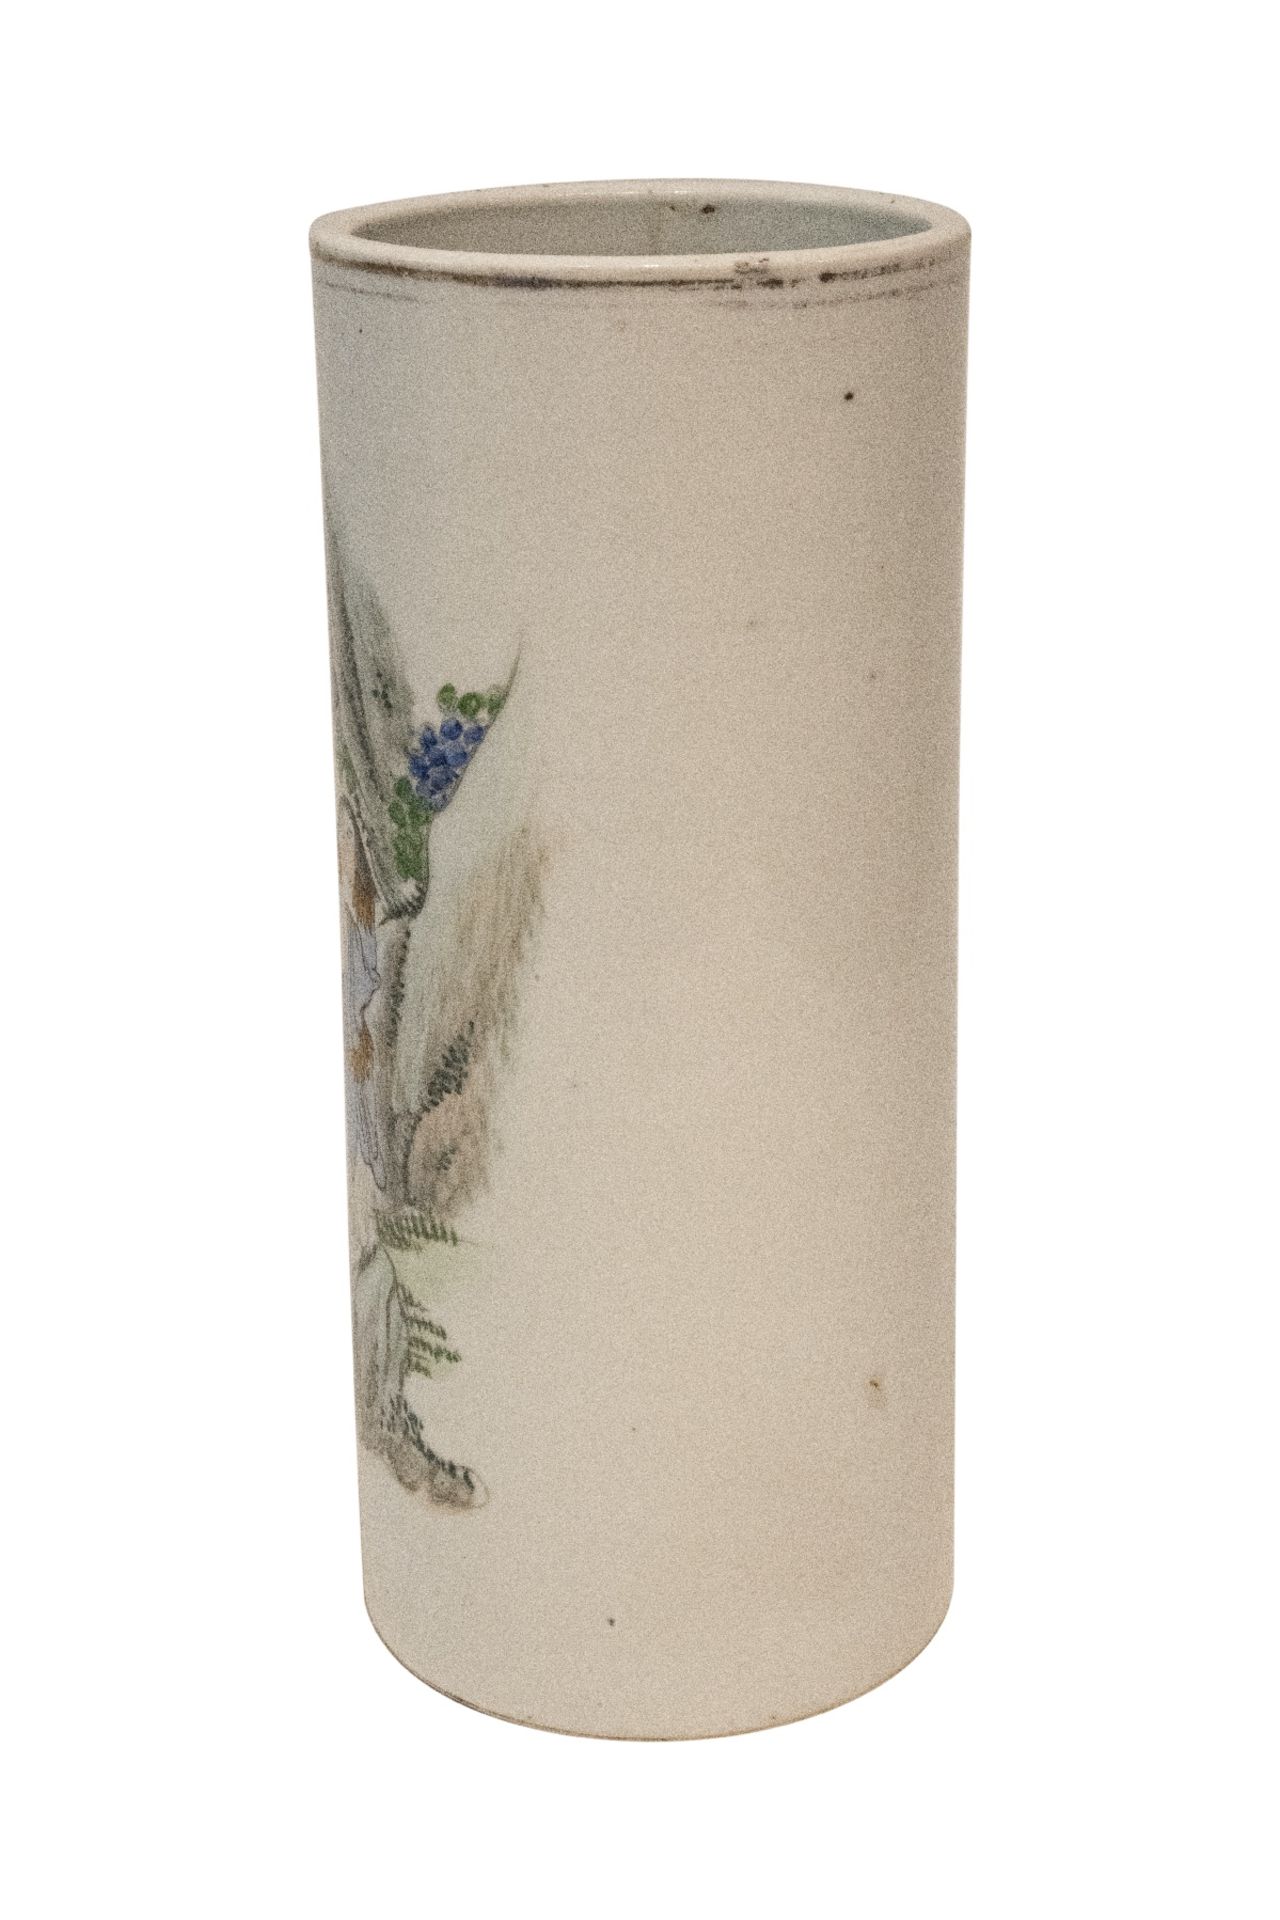 Chinesische Vase aus Min Gio Zeit (1912-1949) | Chinese Vase from Min Gio Period (1912-1949) - Image 2 of 5